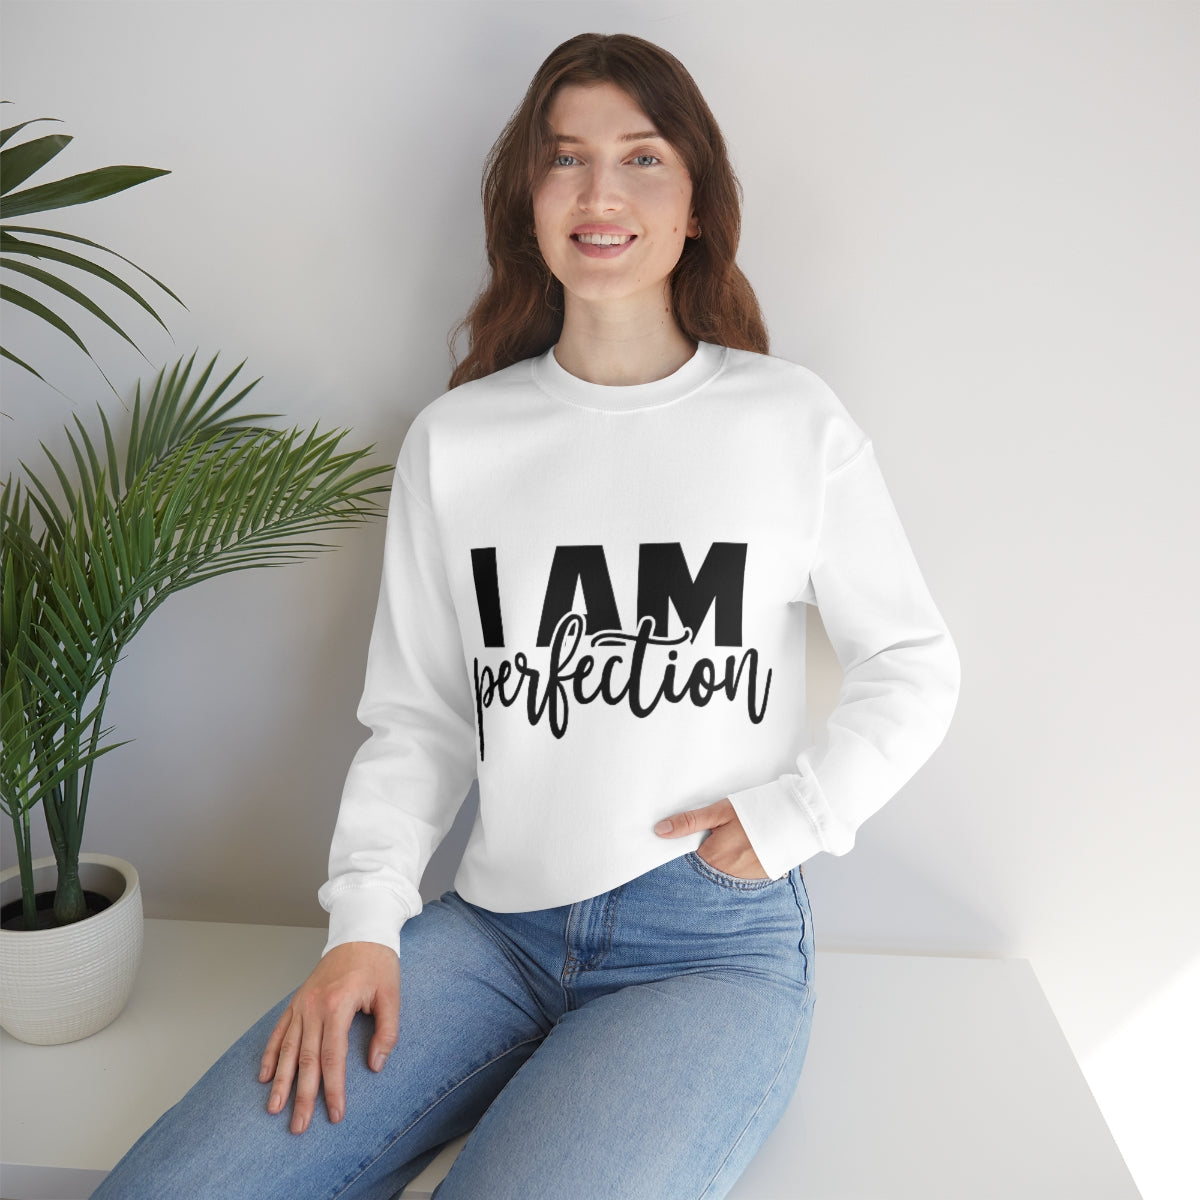 Affirmation Feminist Pro Choice Sweatshirt Unisex  Size –I Am Perfection Printify